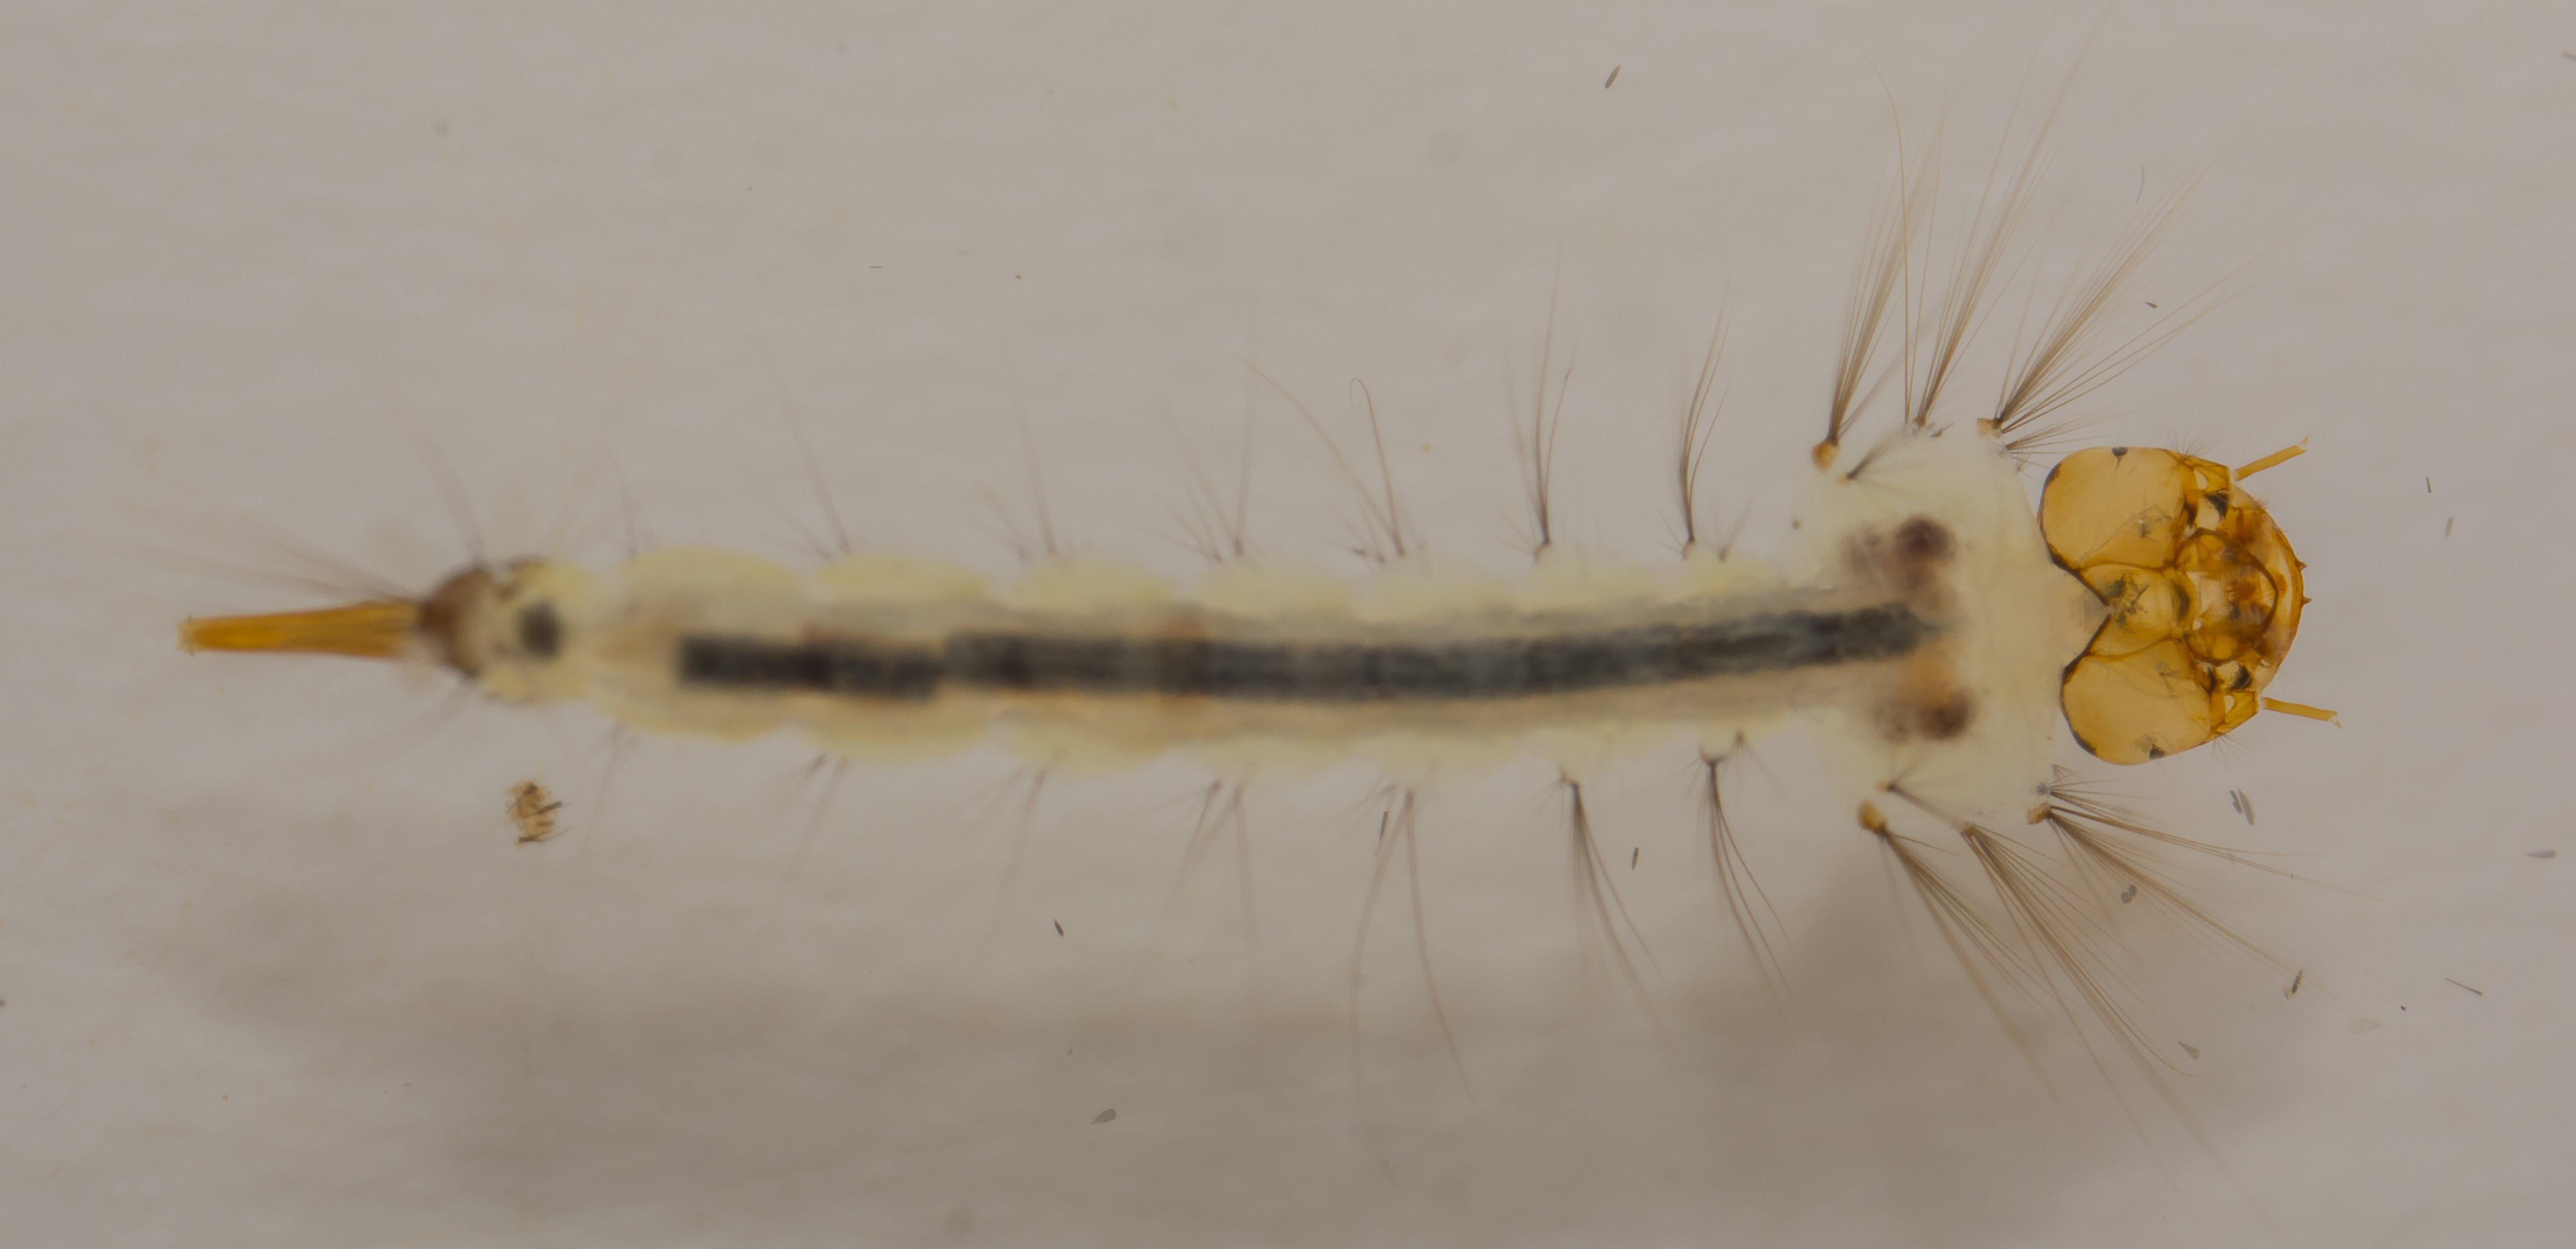 Culex quinquefasciatus larvae